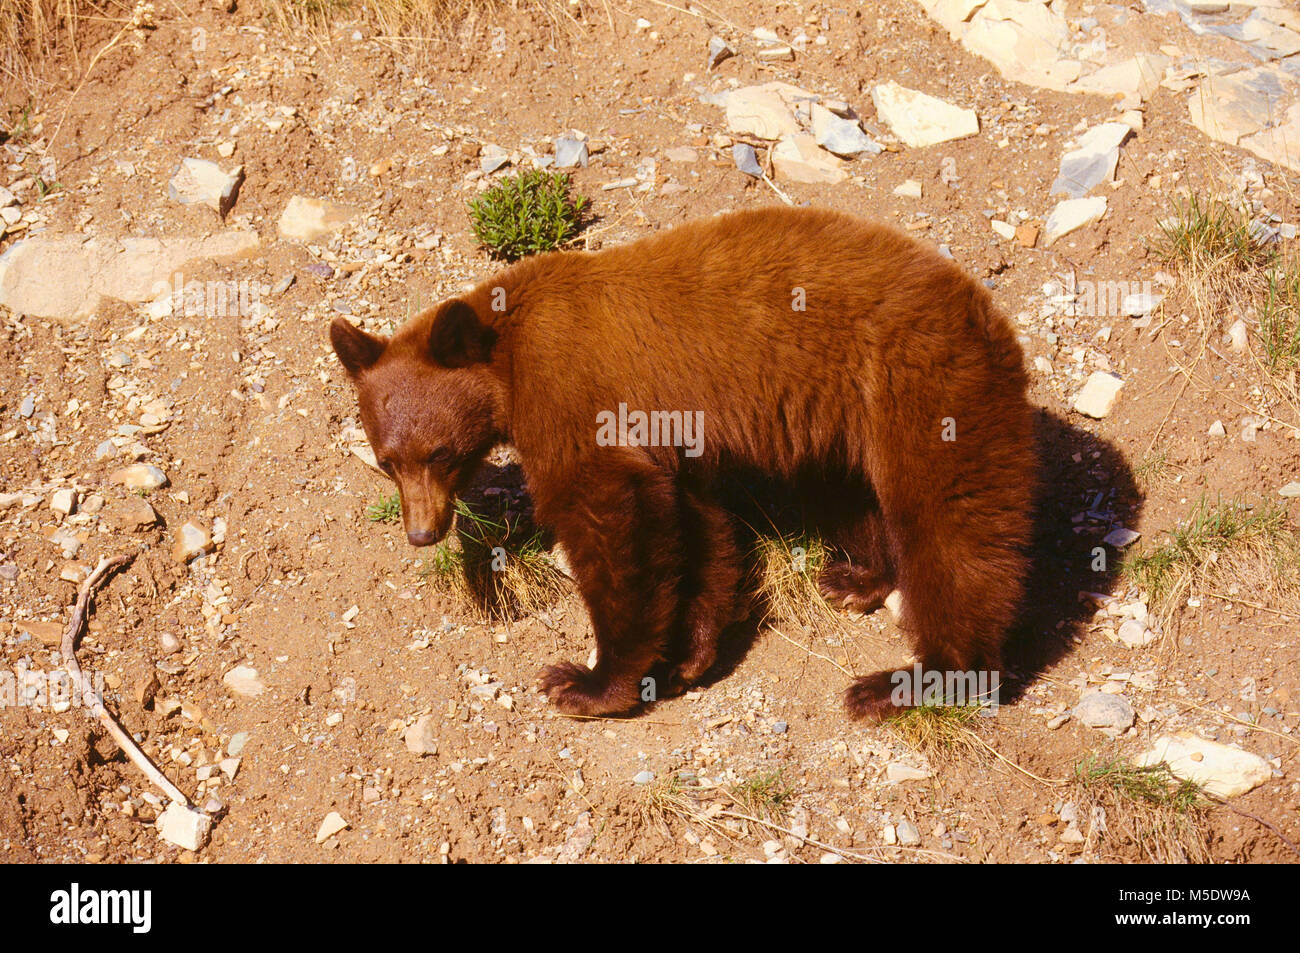 Black Bear, Ursus americanus, Ursidae, redbrown mutant, Bear, mammal, animal, Waterton Lakes National Park, Alberta, Canada Stock Photo